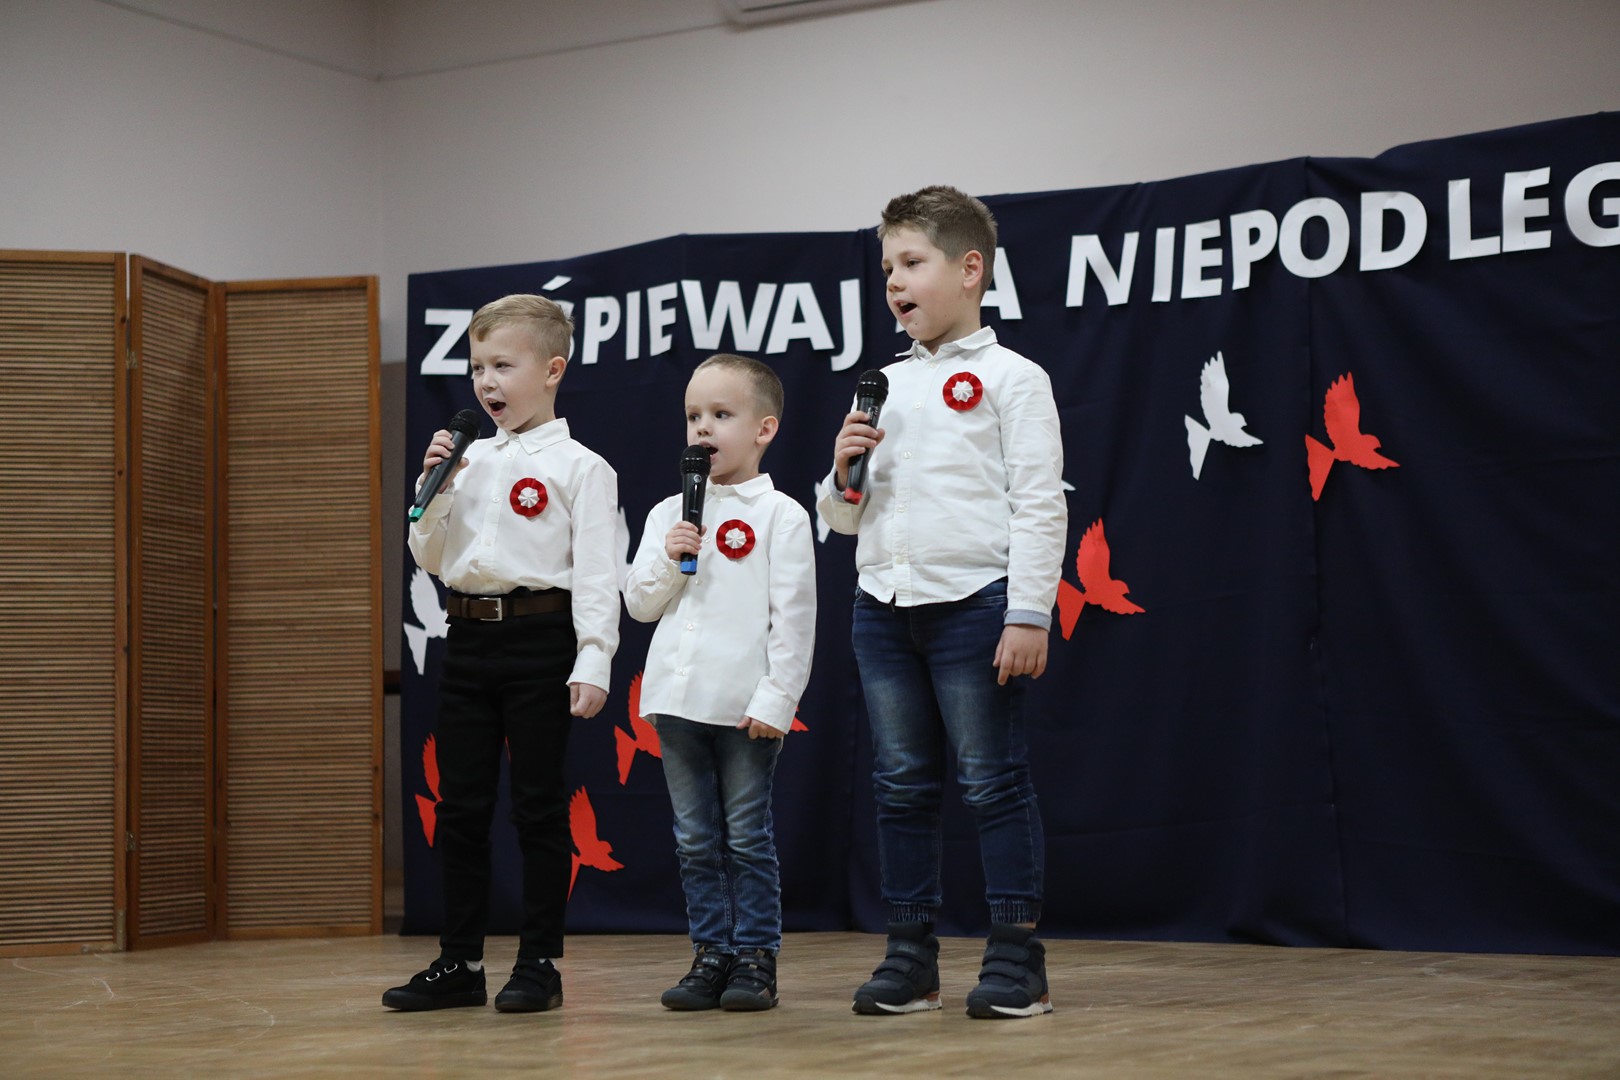 Uczestnicy konkursu podczas występu wokalnego - trzech chłopców.